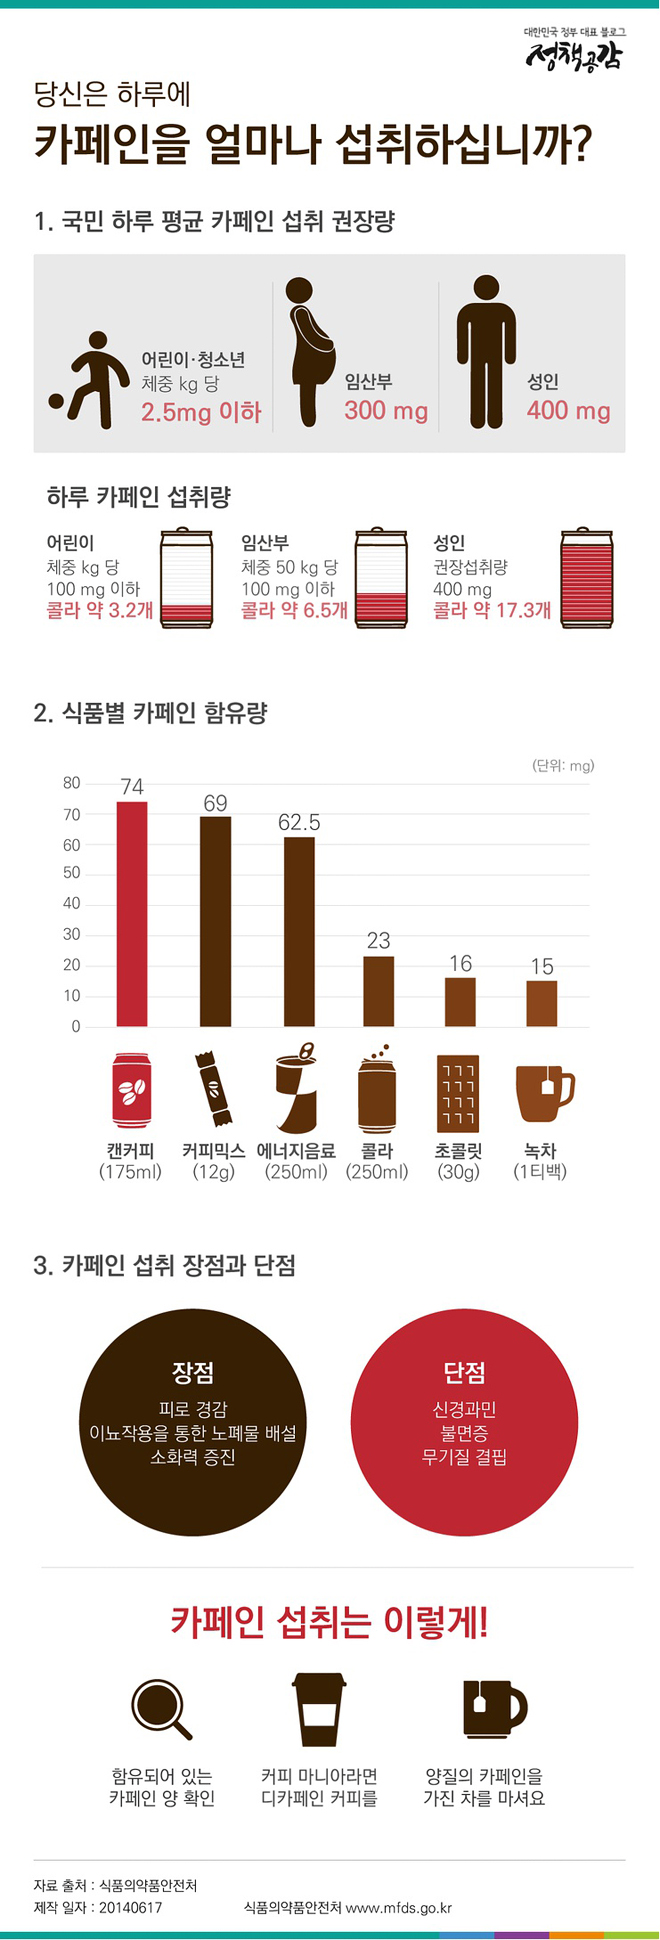 당신은 하루에 카페인을 얼마나 섭취하십니까? 하단내용 참조